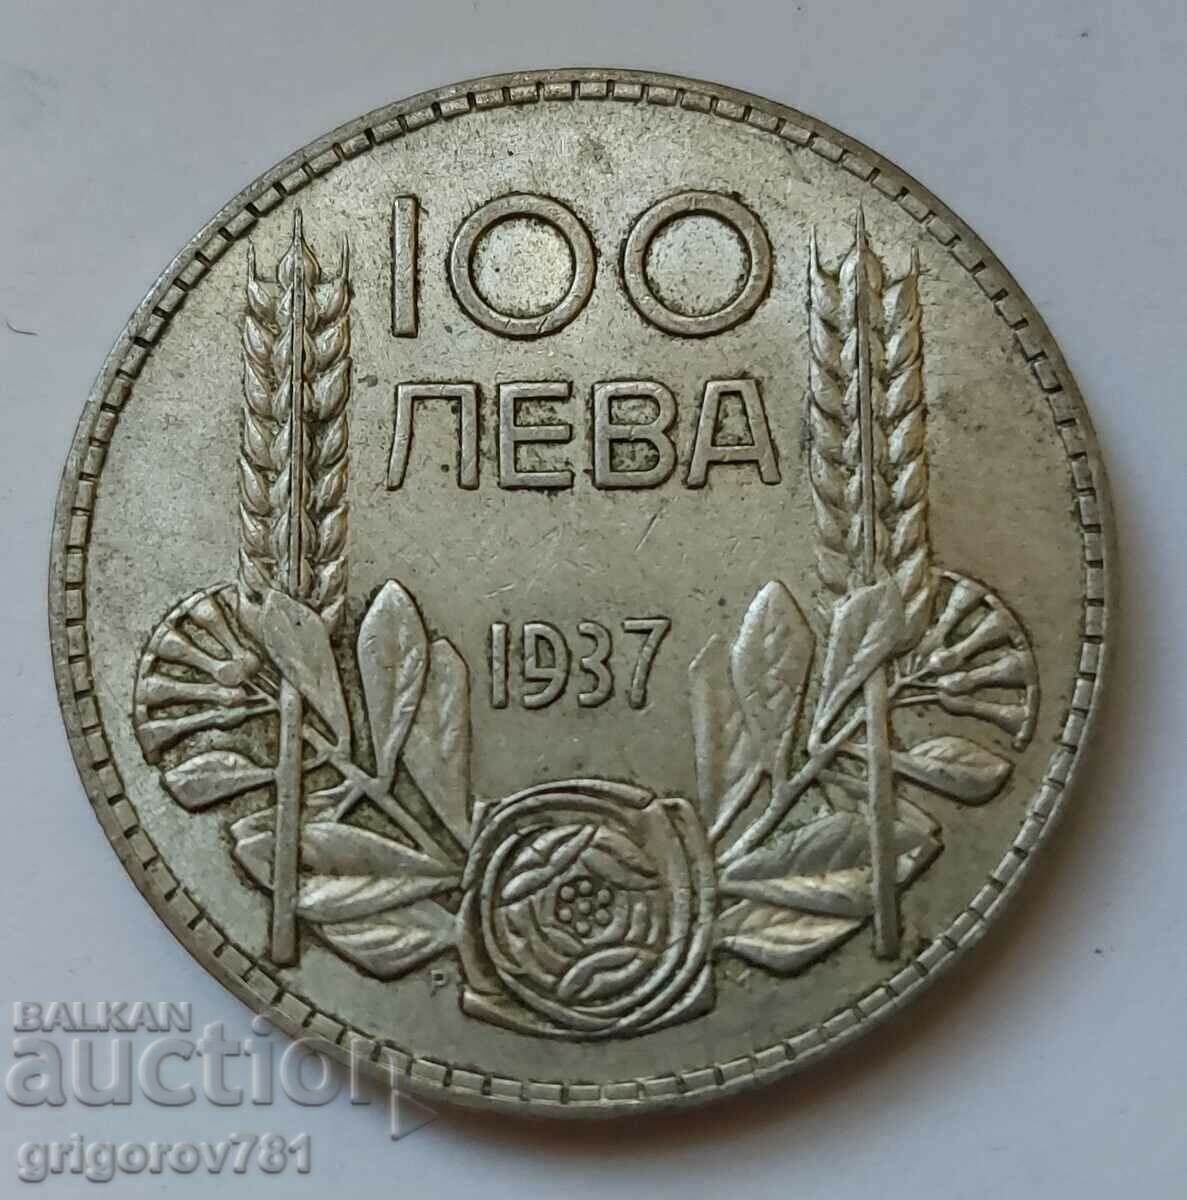 100 leva silver Bulgaria 1937 - silver coin #85